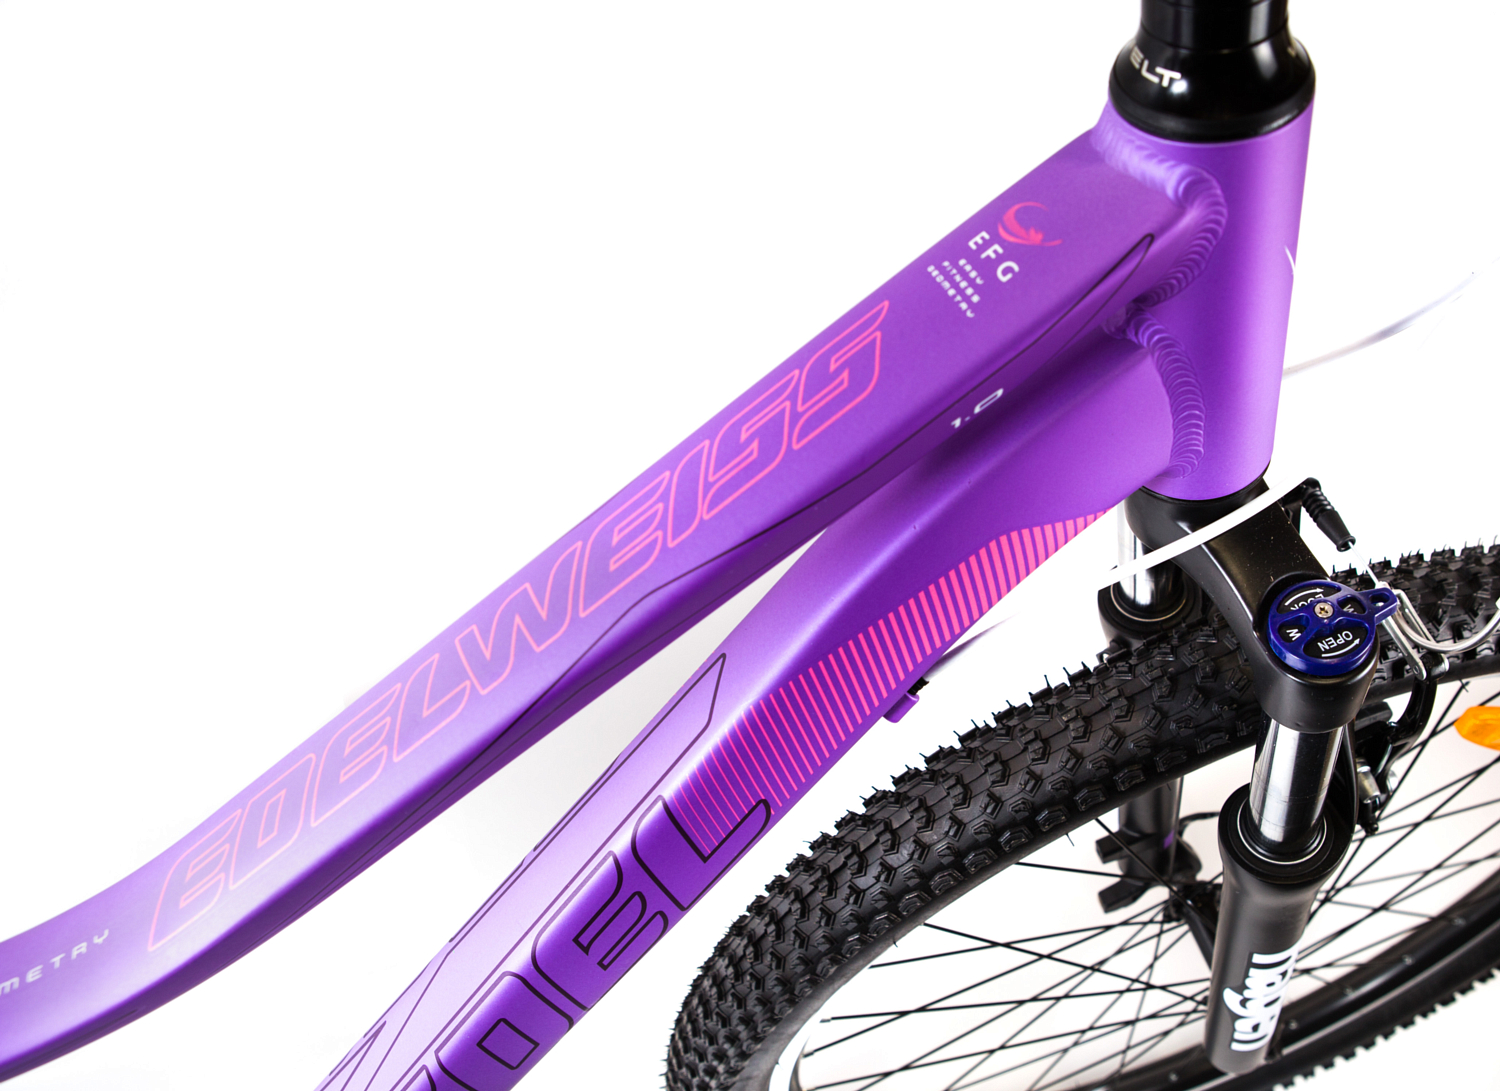 Велосипед Welt Edelweiss 1.0 2019 matt purple/pink